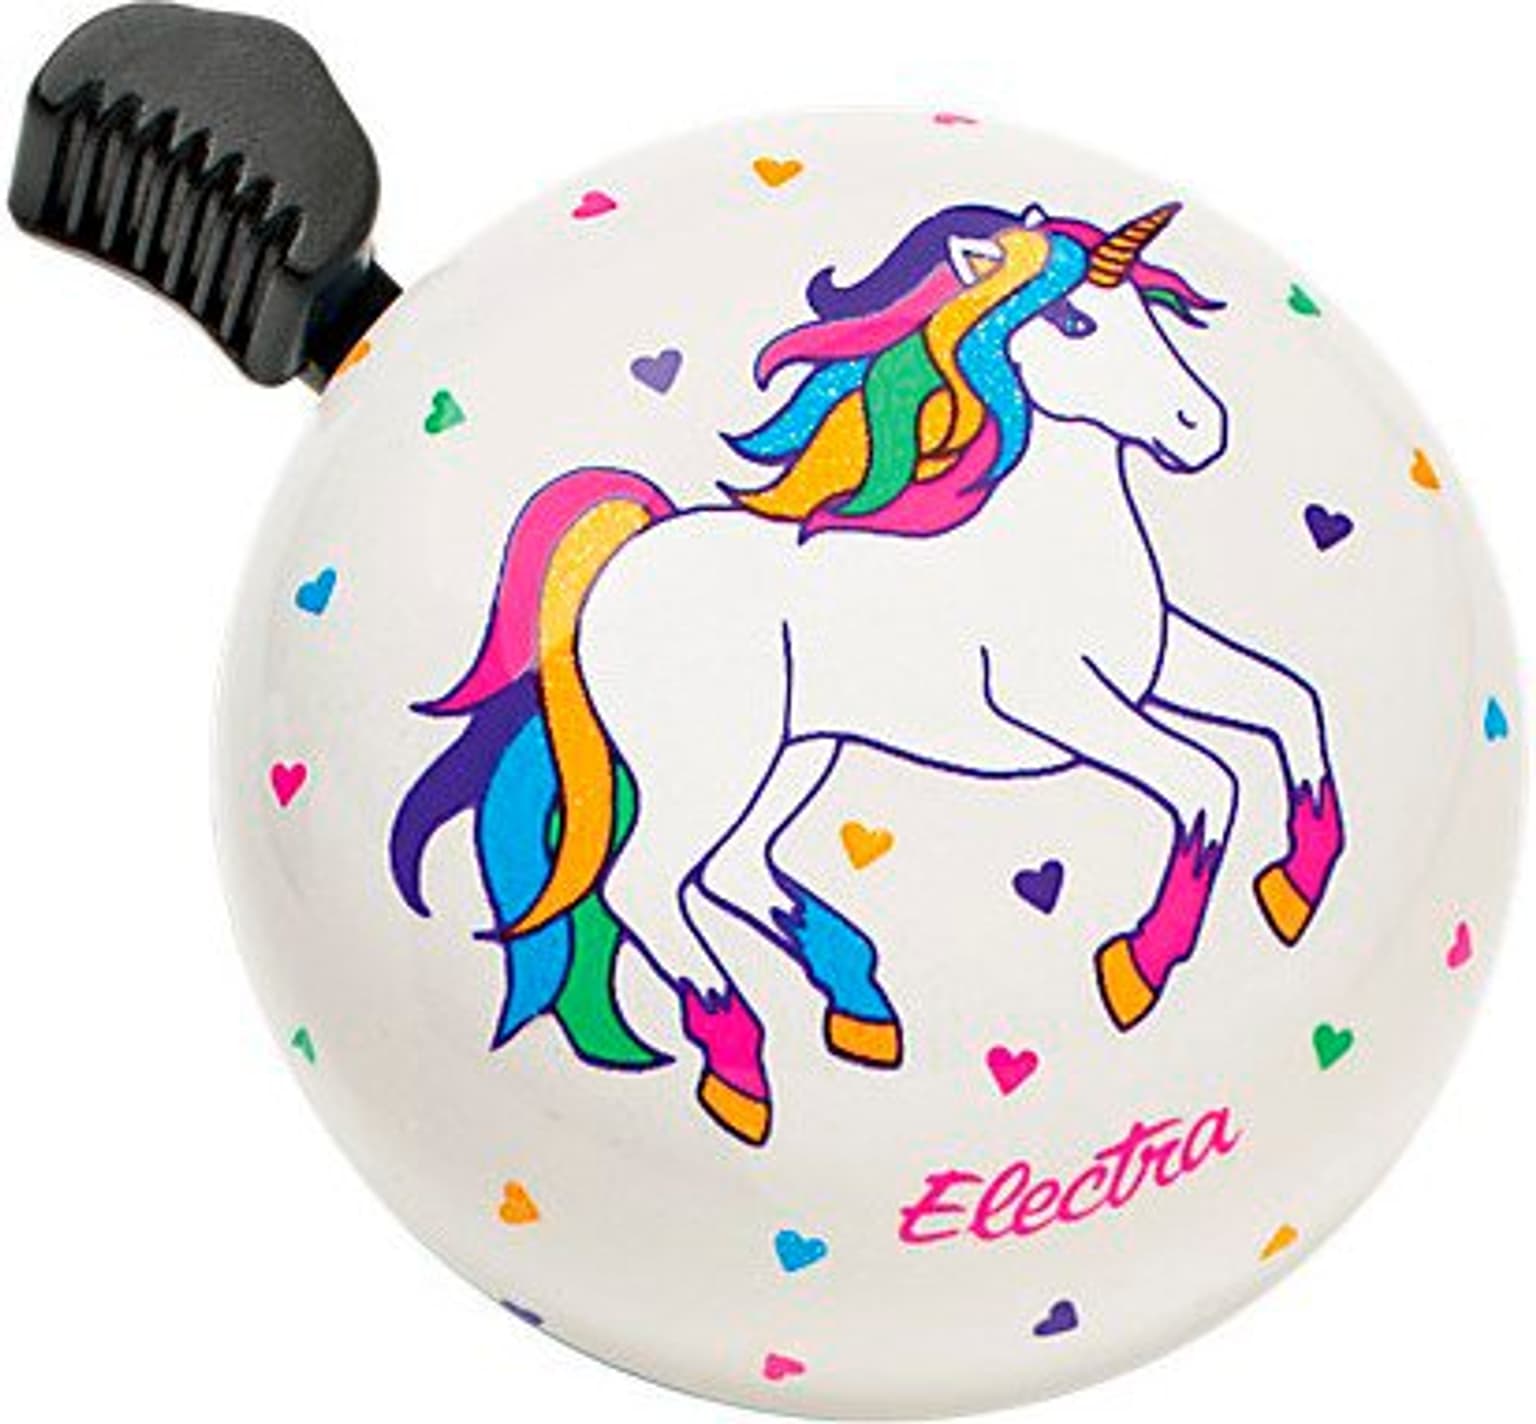 Electra Electra Unicorn Veloglocke 1